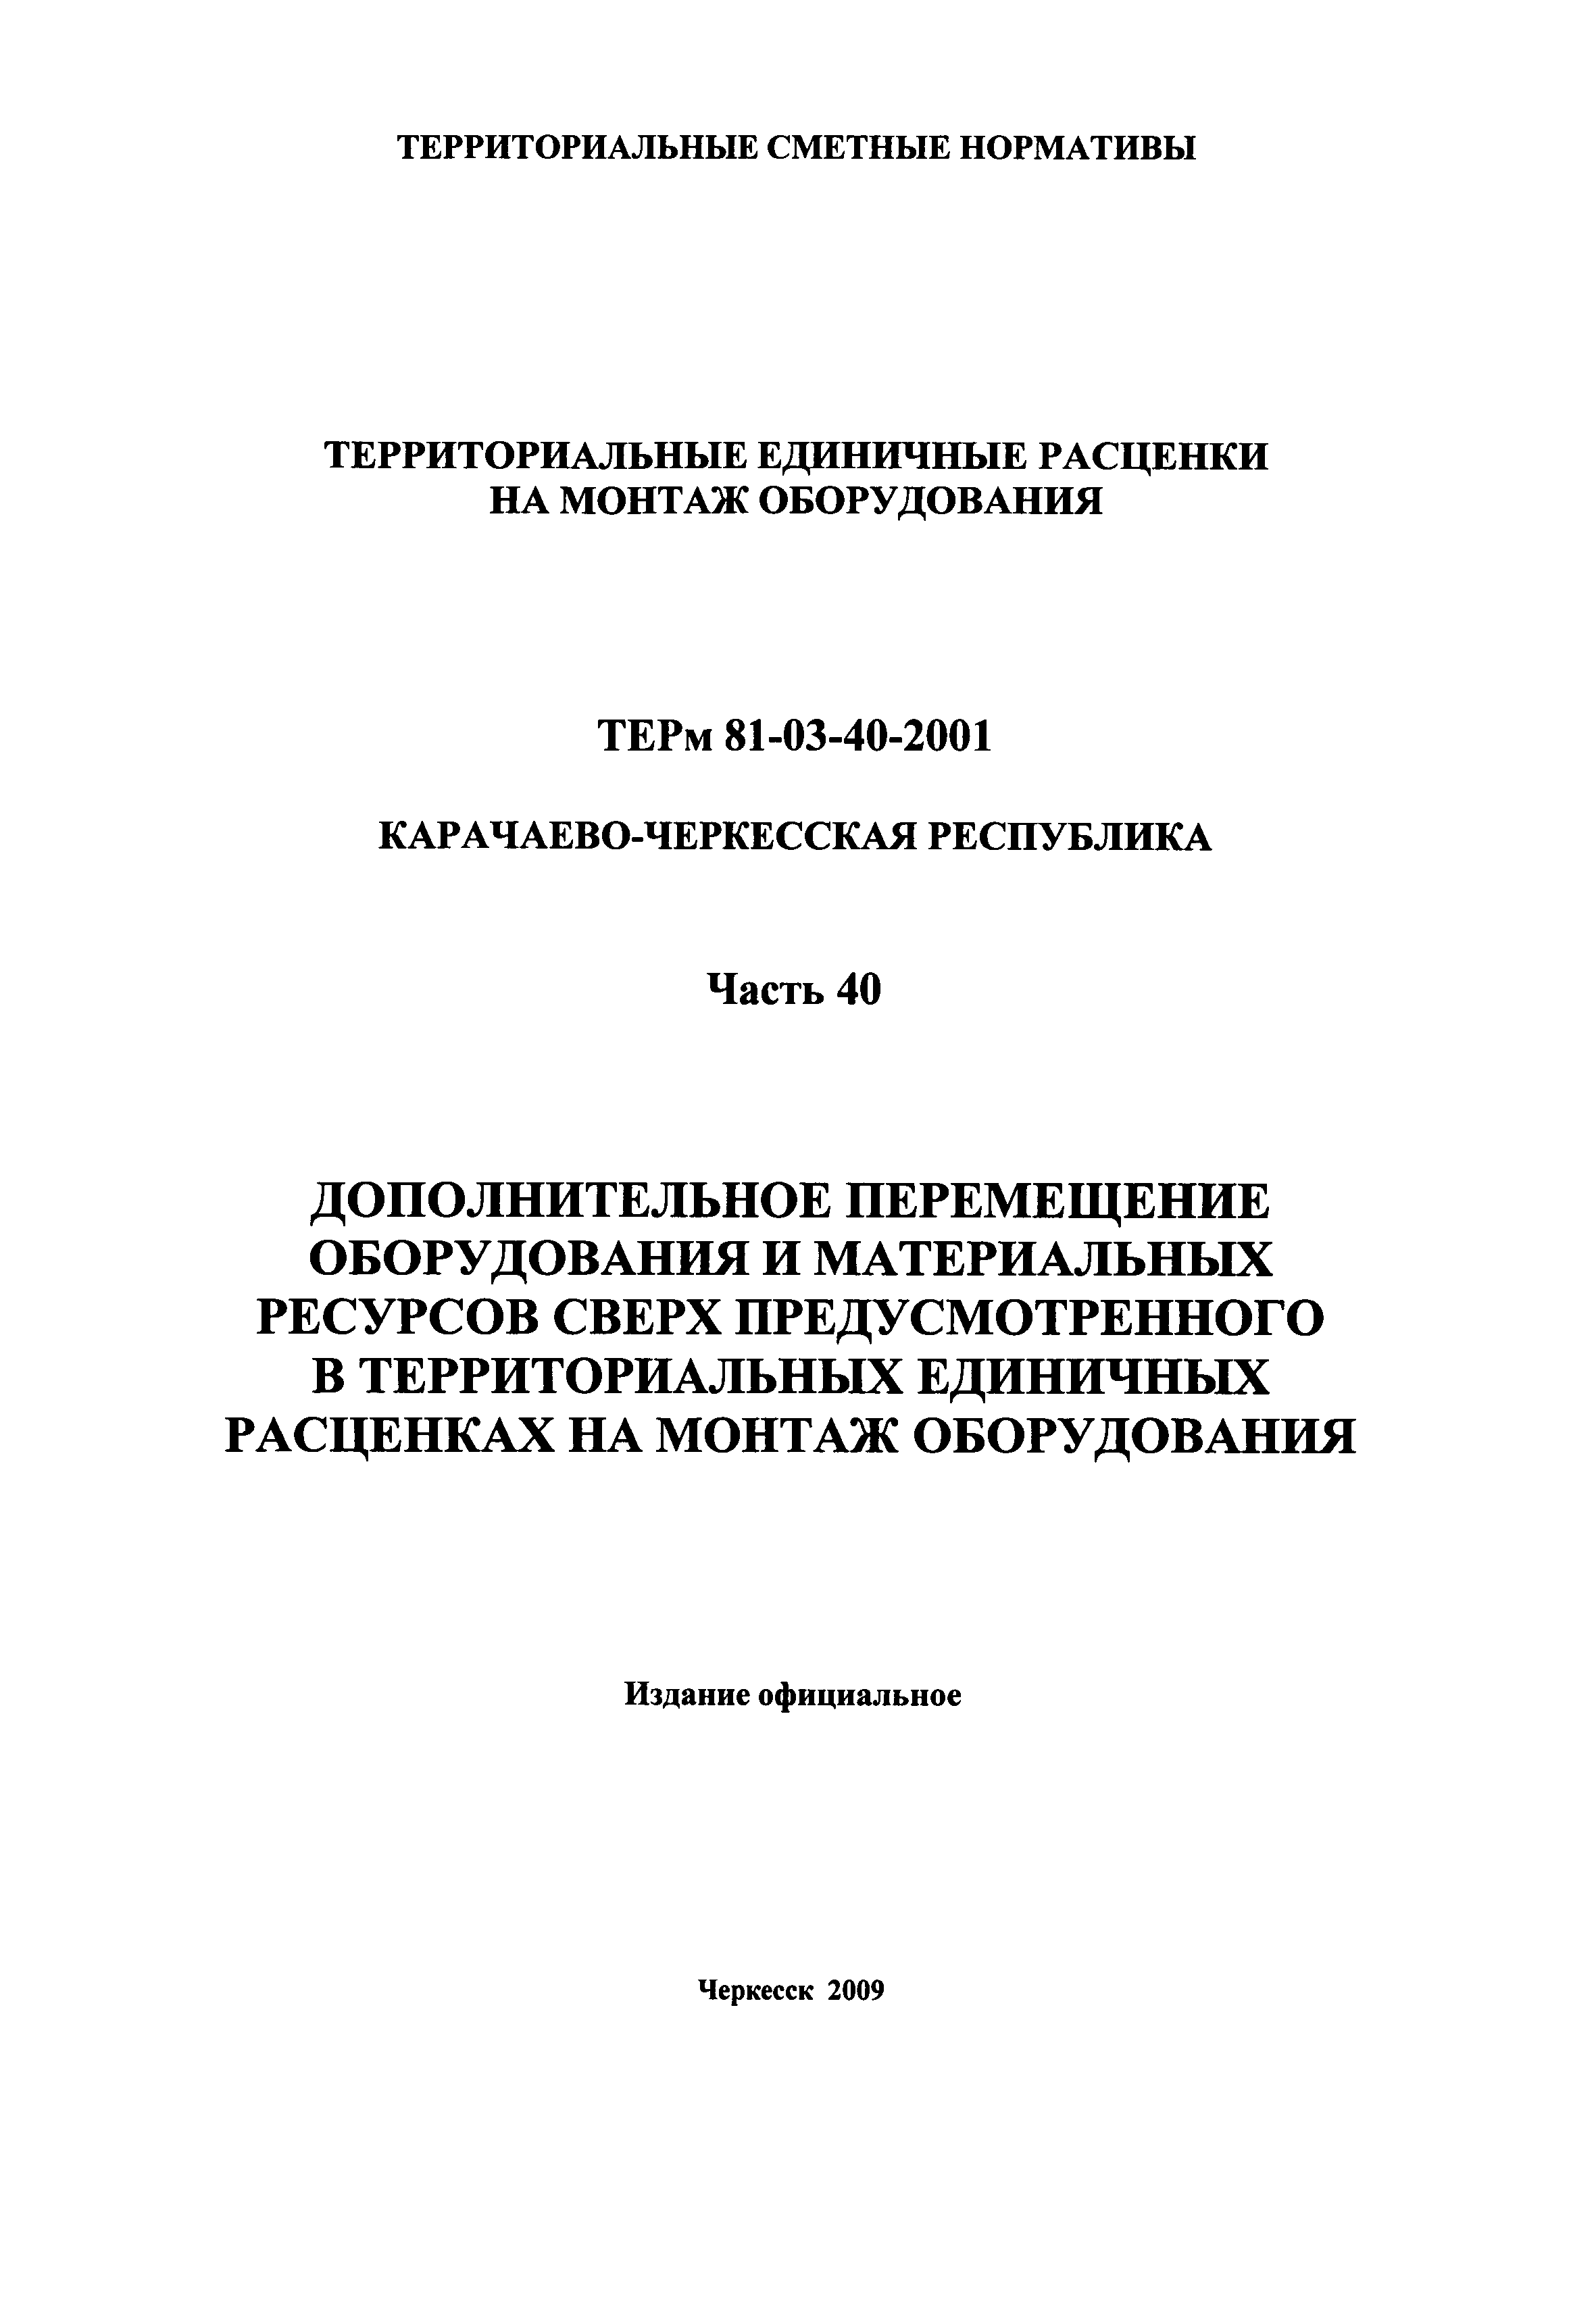 ТЕРм Карачаево-Черкесская Республика 40-2001